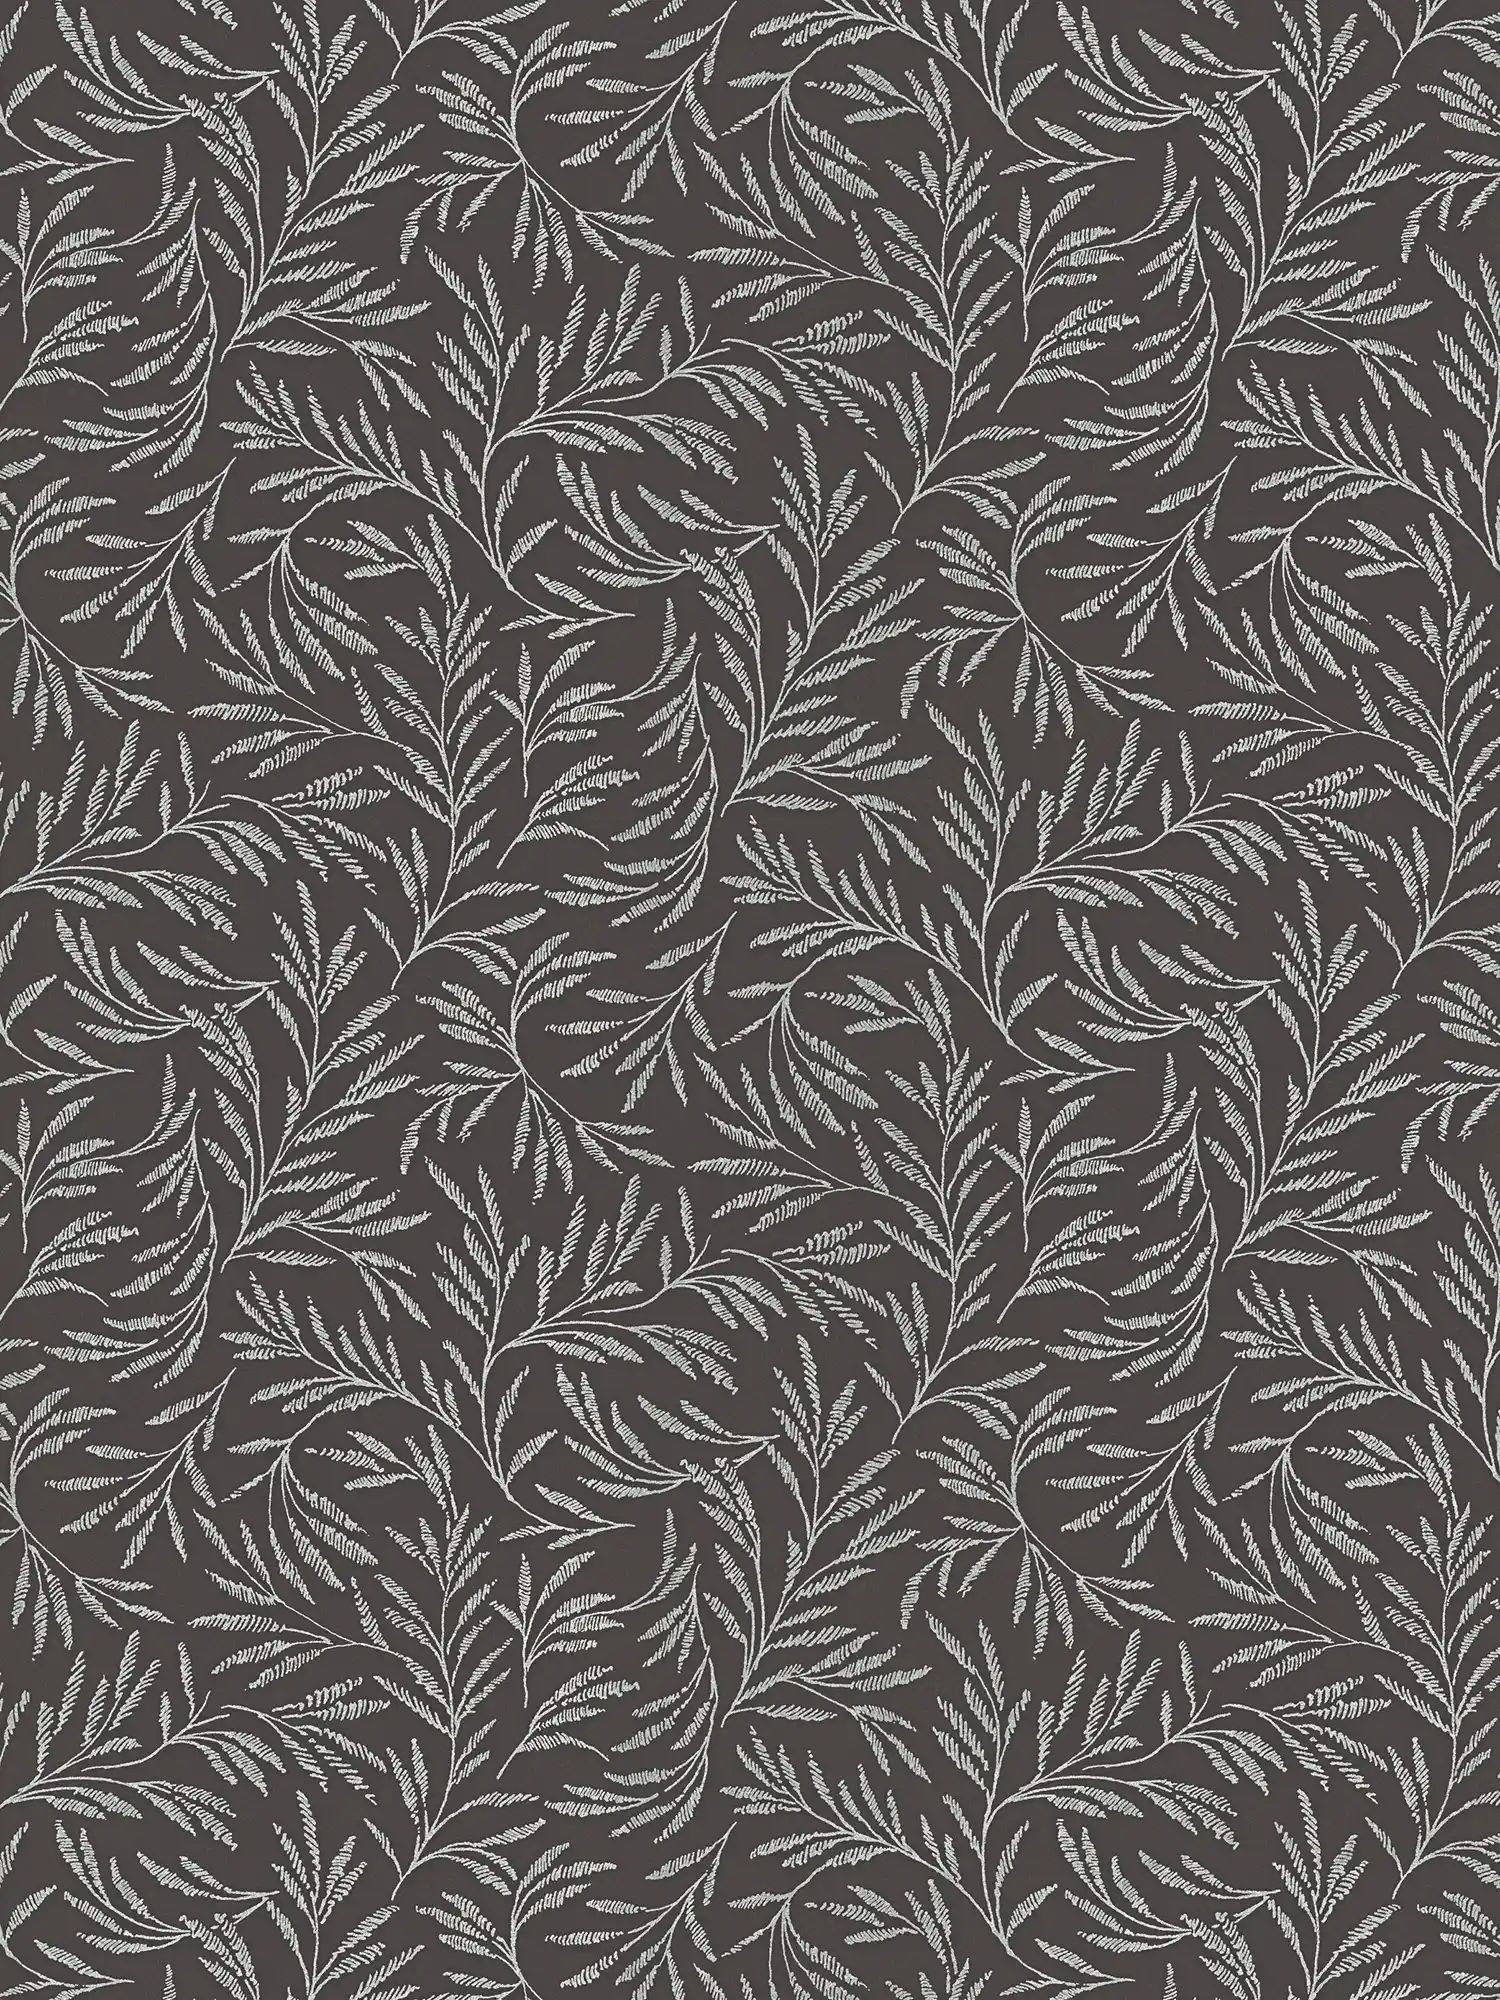 Vlie behang metallic patroon met bladranken - metallic, zwart
